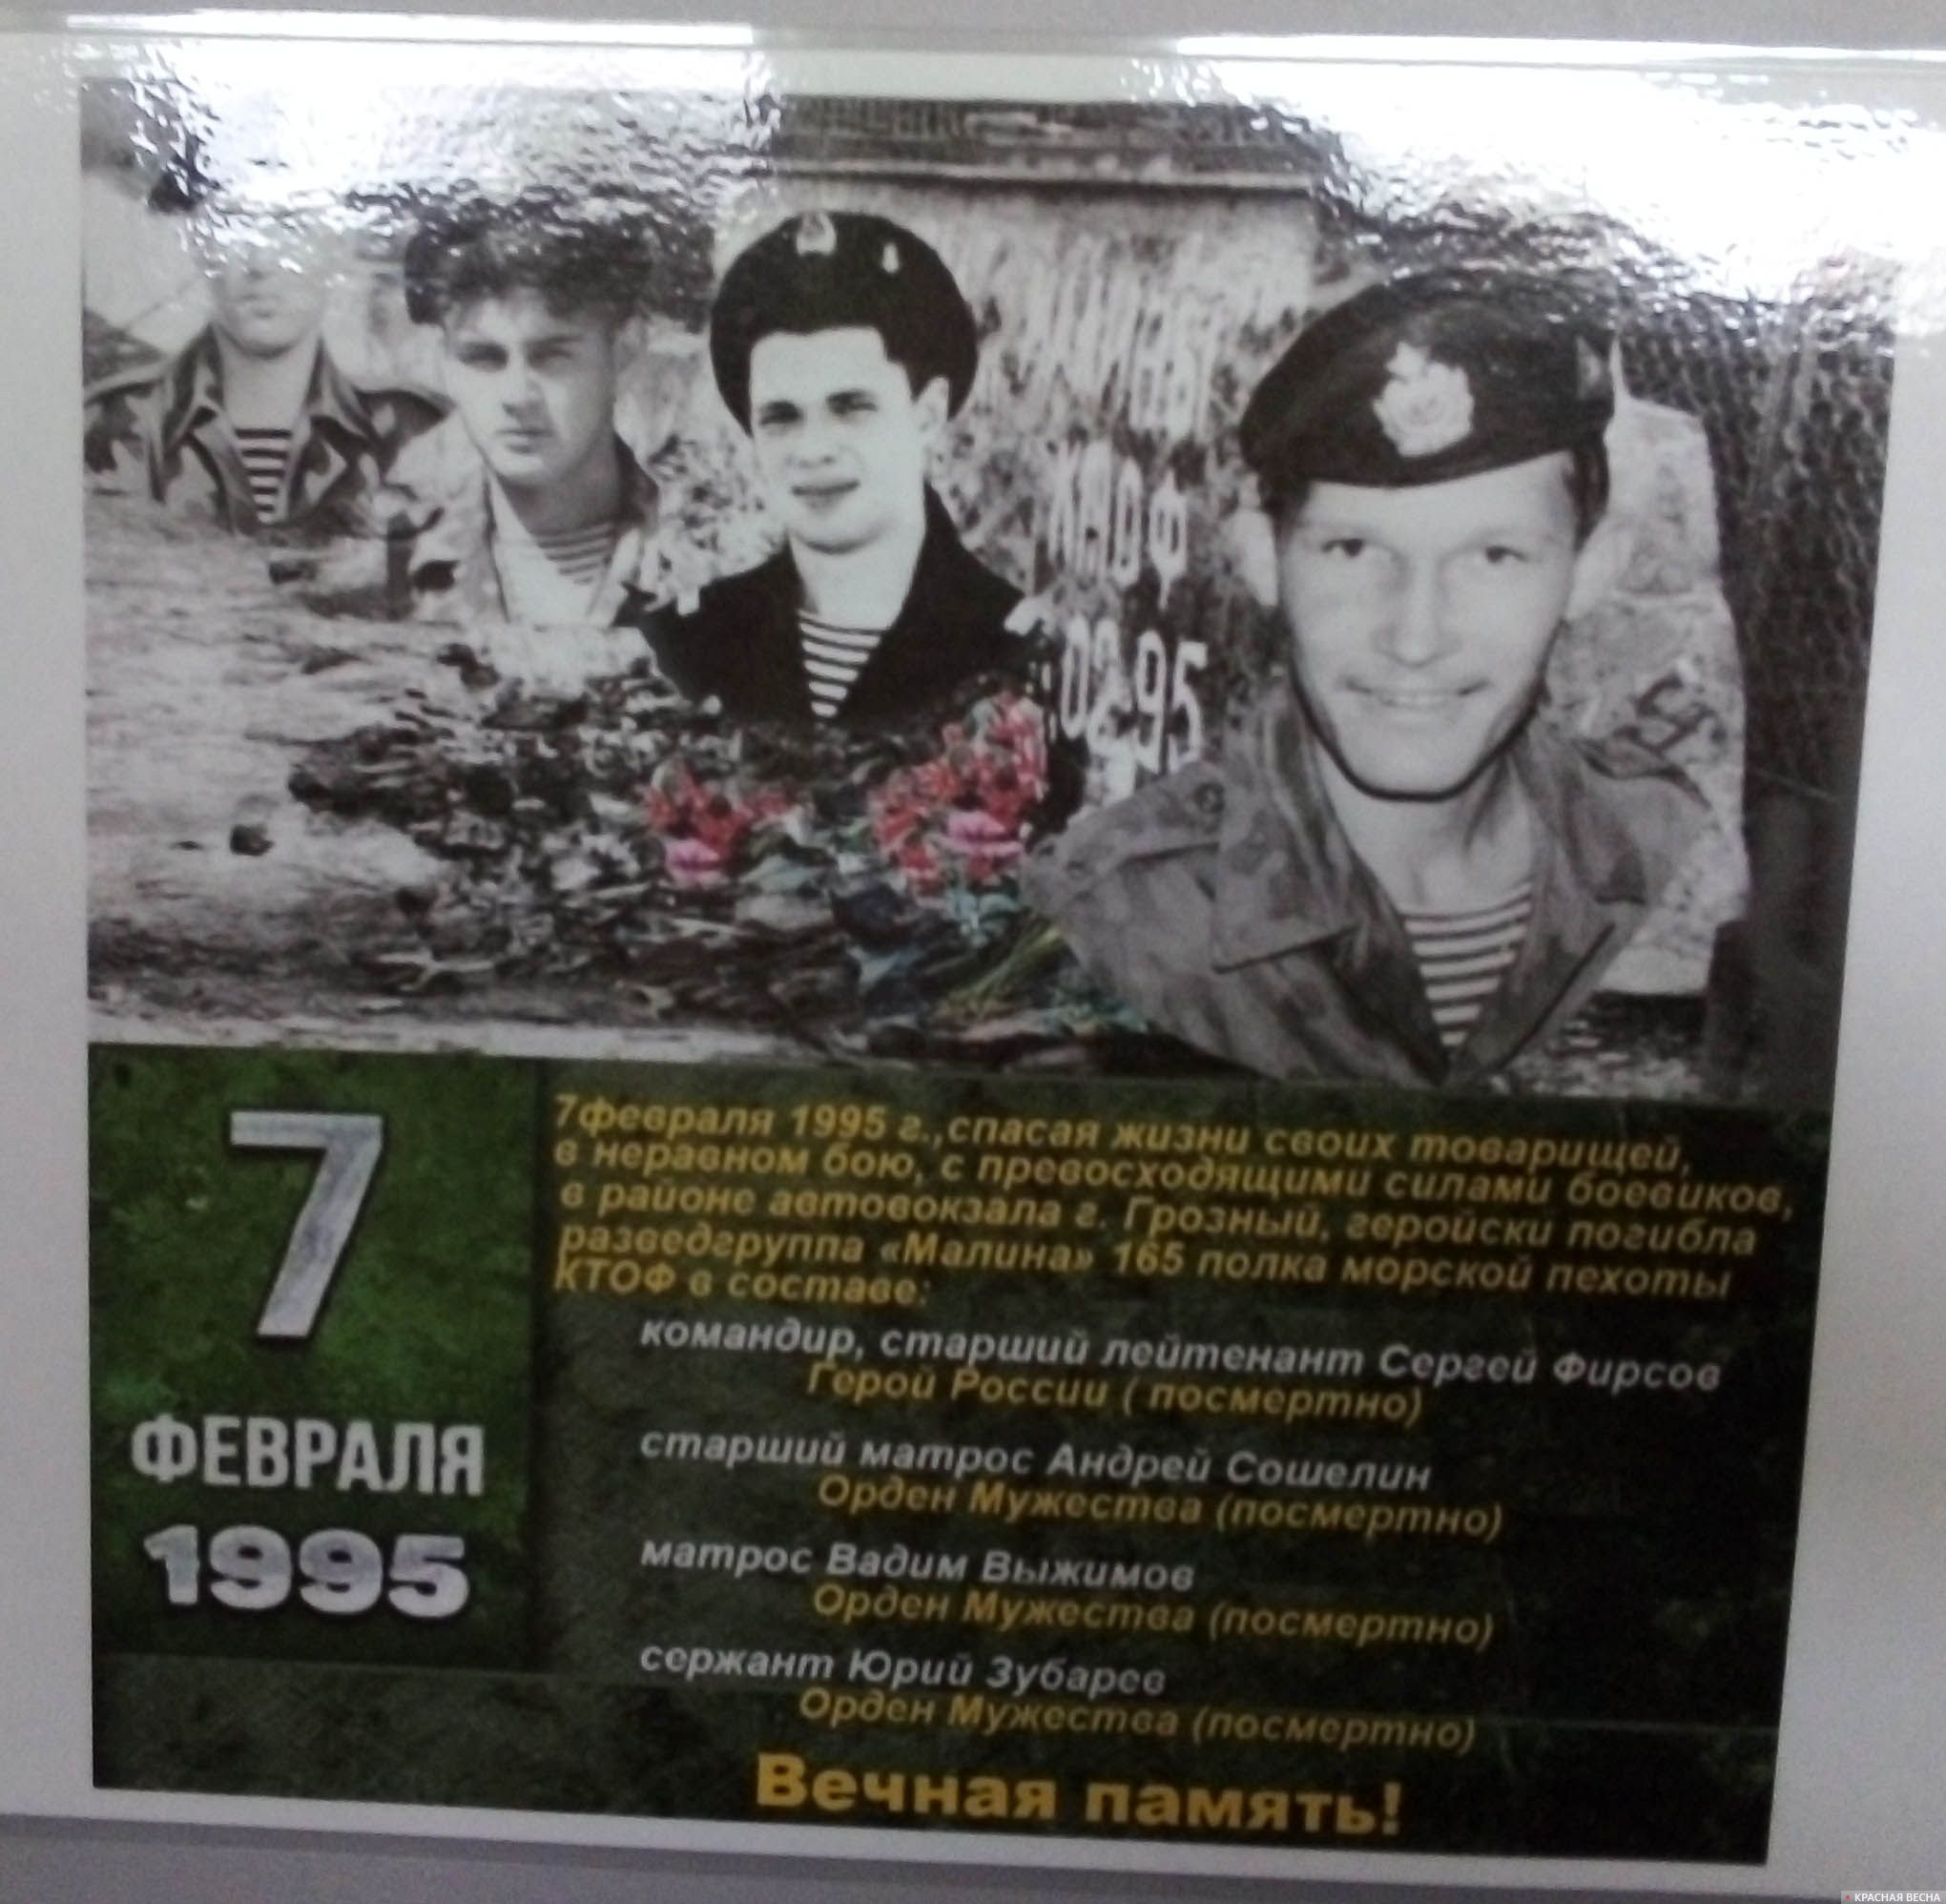 Фотоанонс дня памяти Андрея Сошелина на доске объявлений школы 